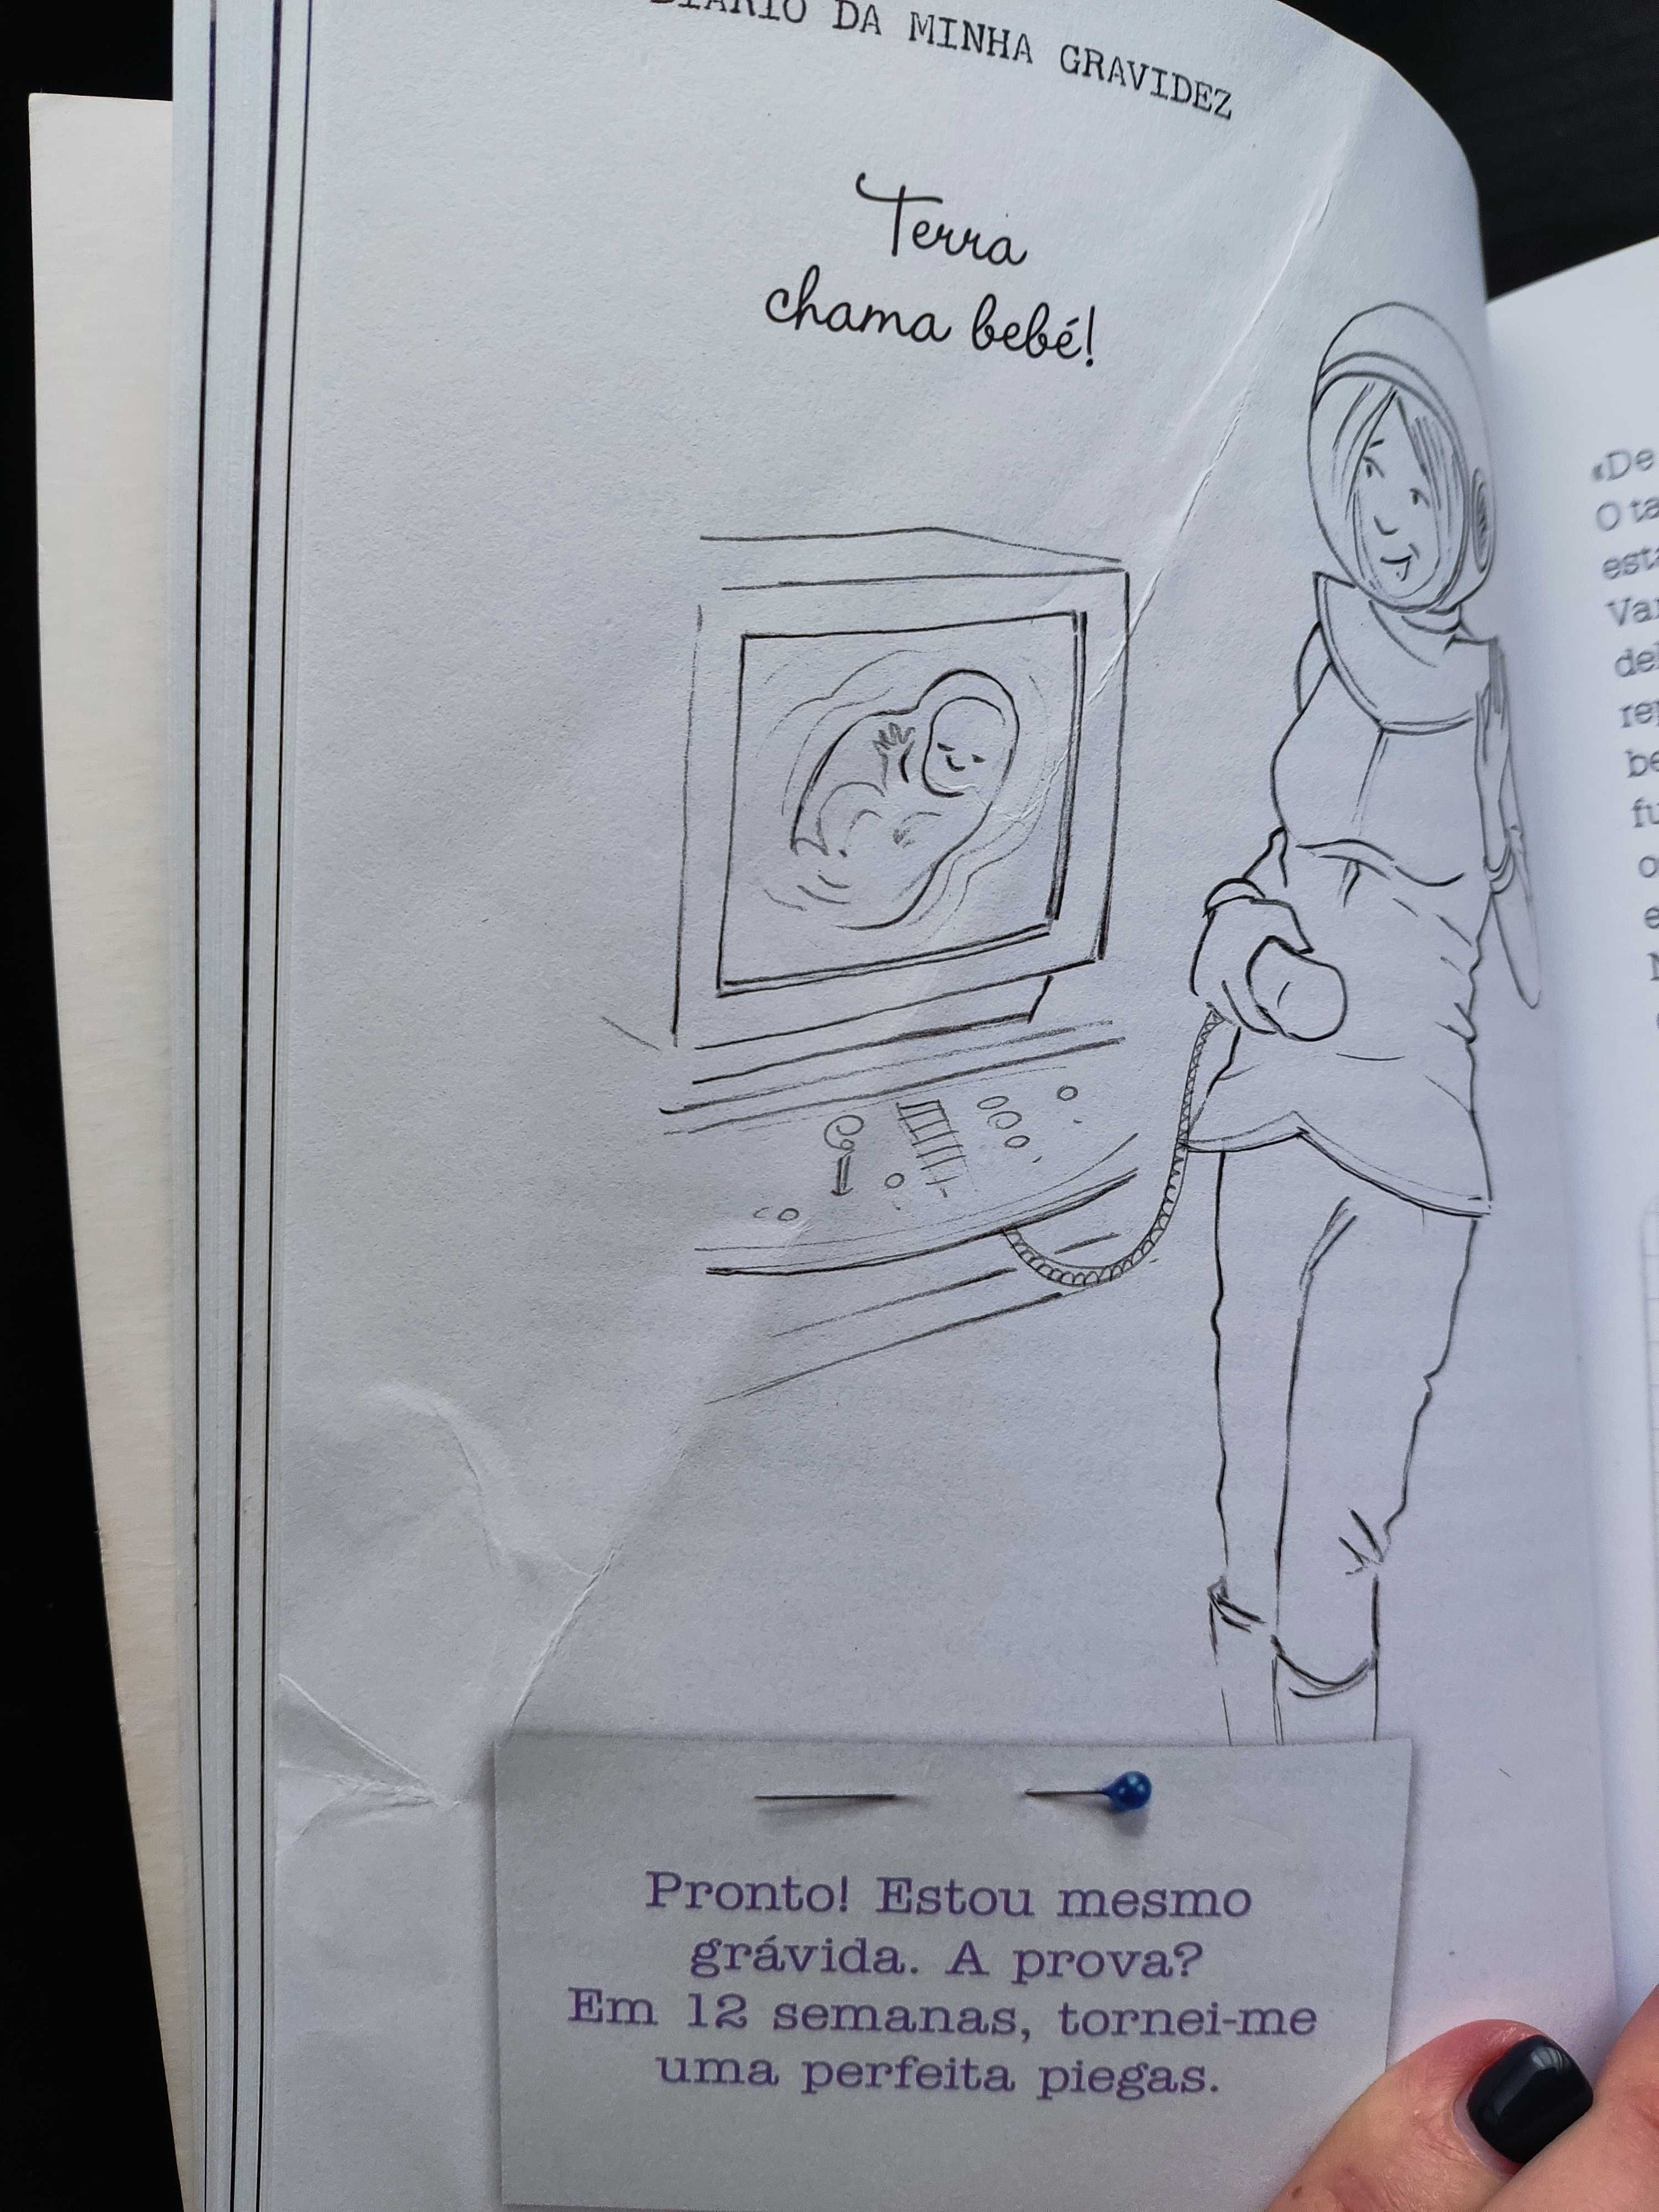 Livro "O diário da minha gravidez"